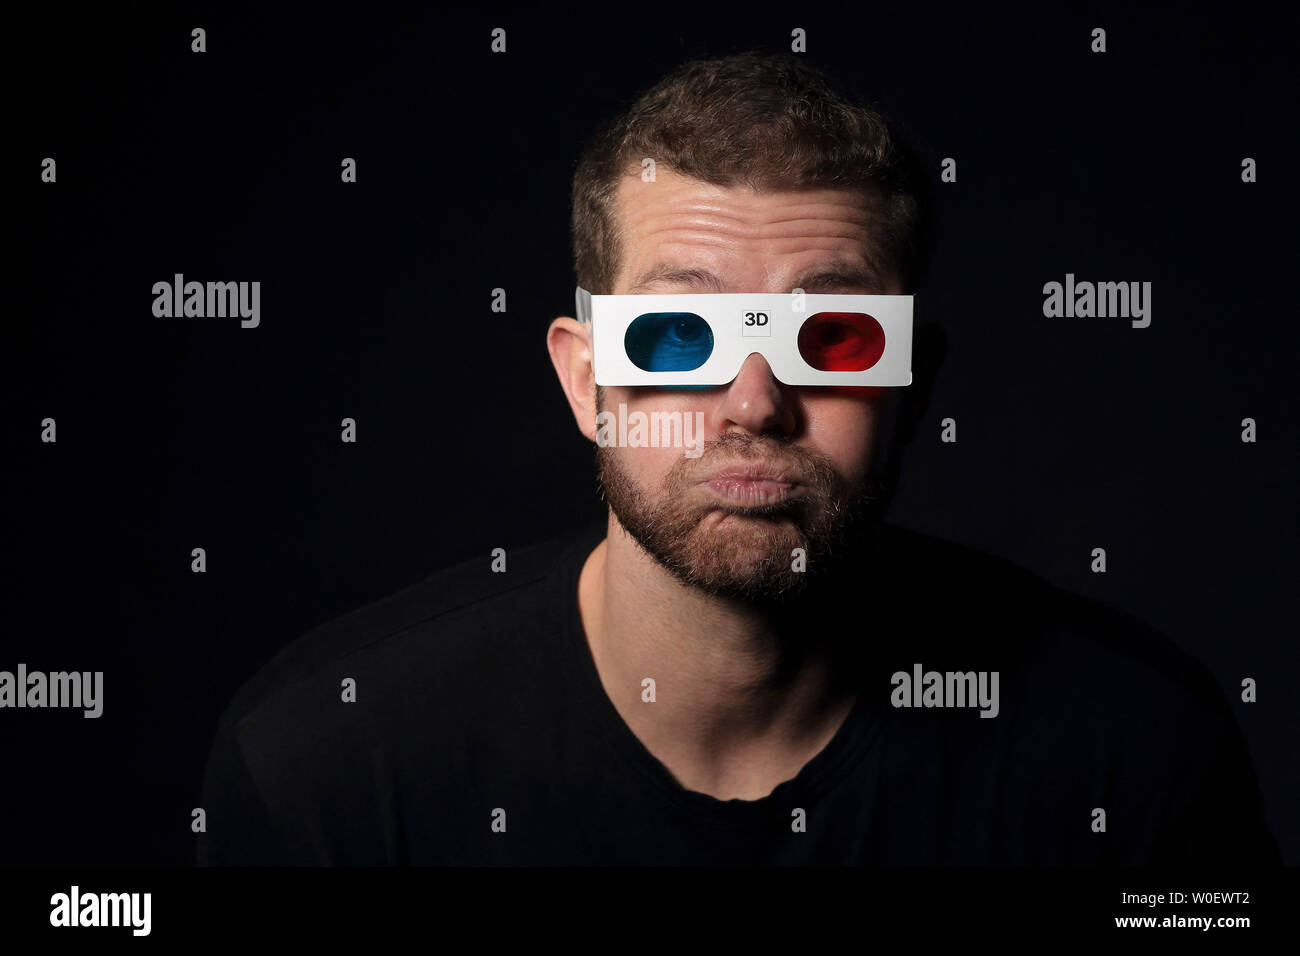 30 Jahre alter Mann, mit 3D-Brille Stockfoto